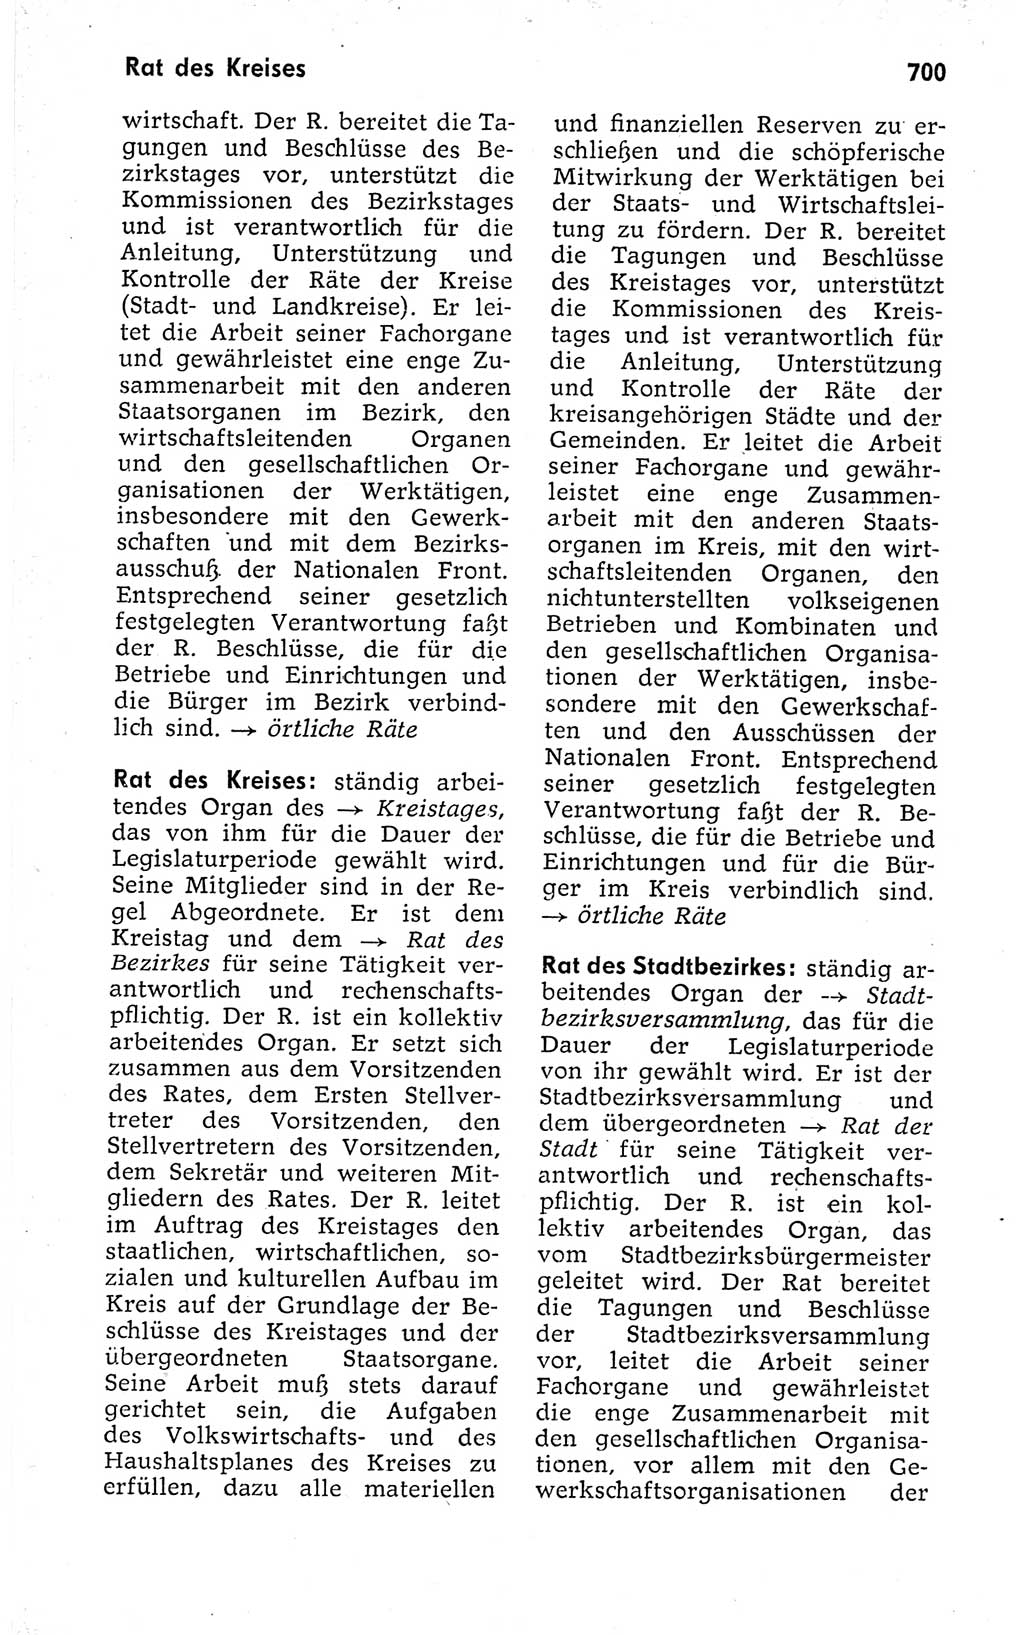 Kleines politisches Wörterbuch [Deutsche Demokratische Republik (DDR)] 1973, Seite 700 (Kl. pol. Wb. DDR 1973, S. 700)